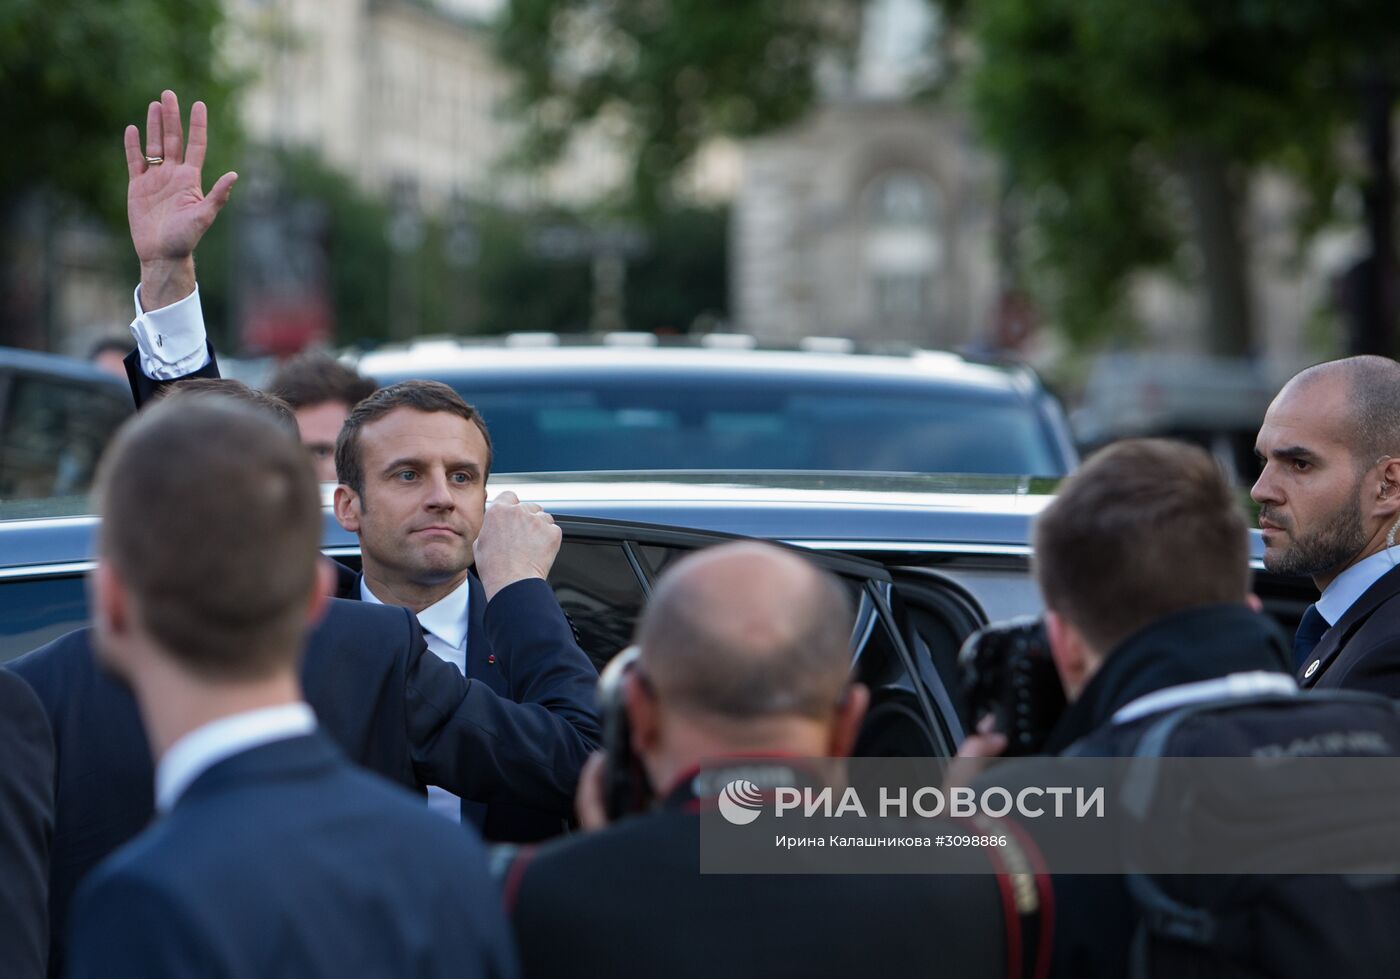 Инаугурация избранного президента Франции Э. Макрона